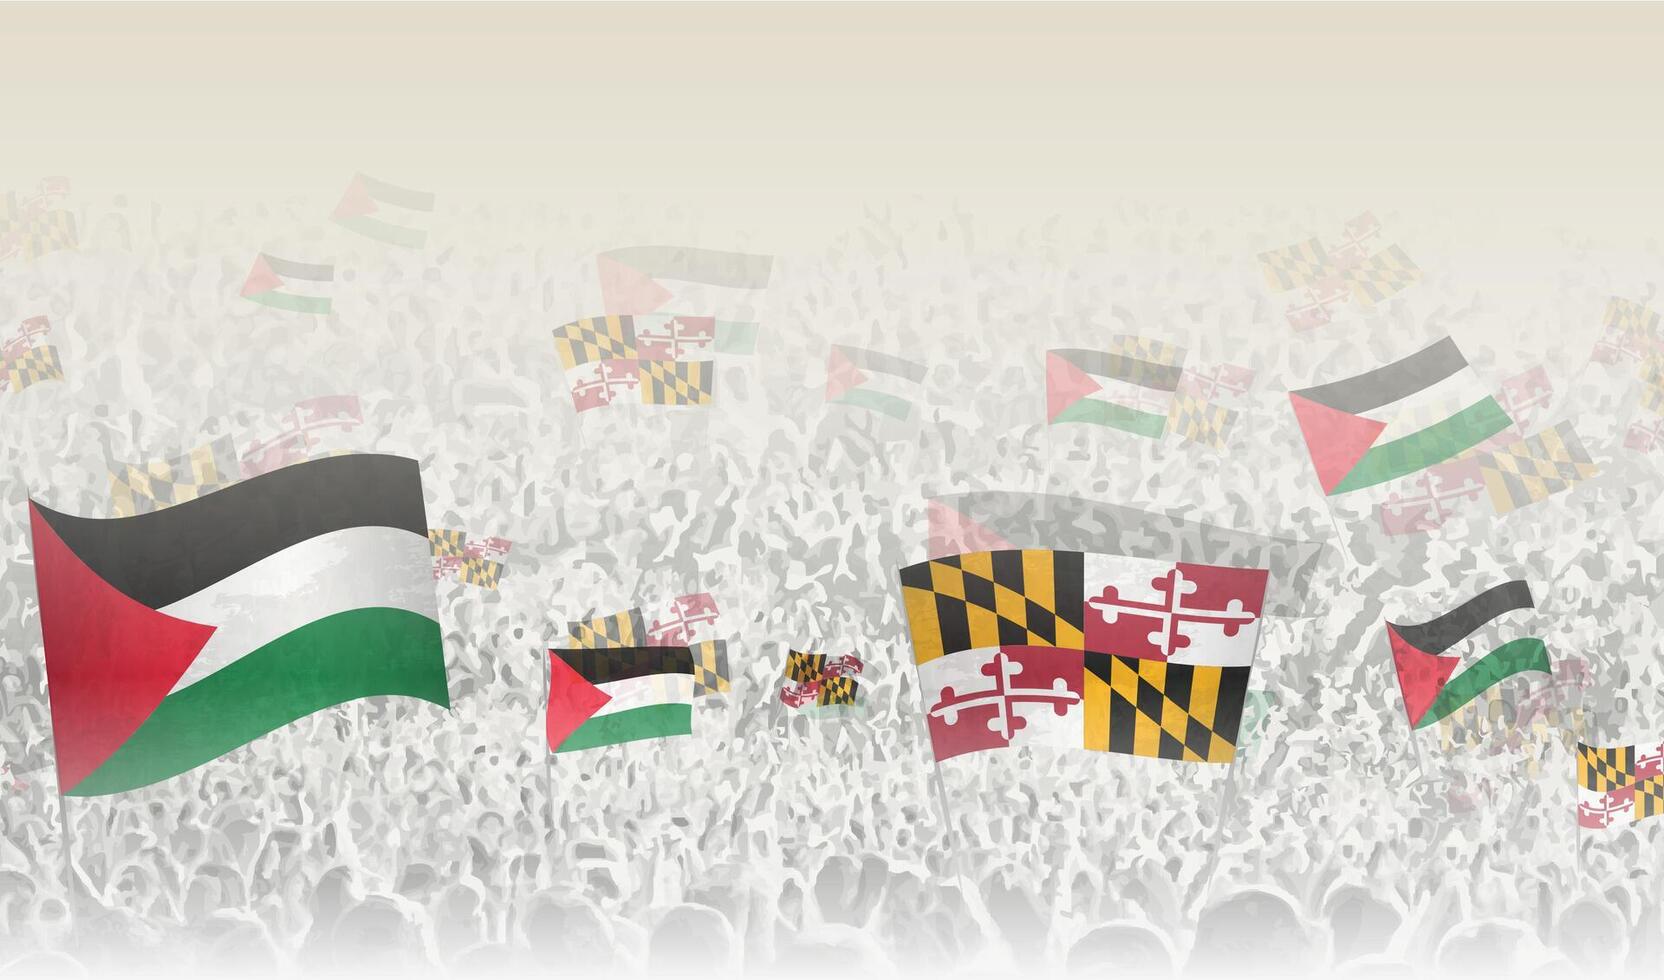 Palästina und Maryland Flaggen im ein Menge von Jubel Personen. vektor